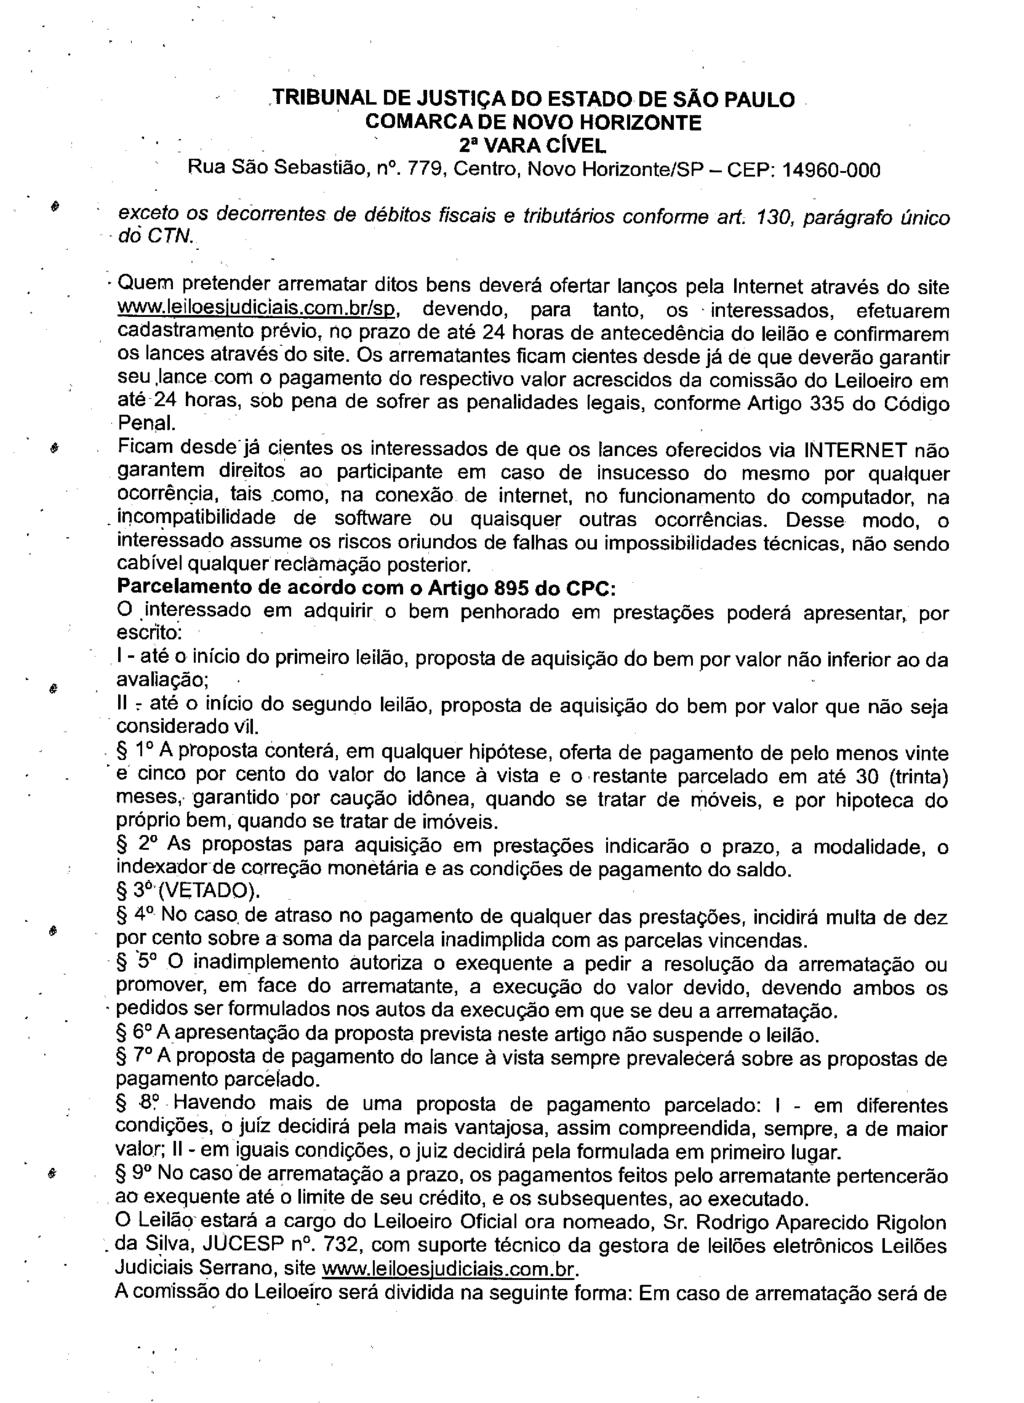 fls. 162 Este documento é cópia do original, assinado digitalmente por VALERIA THEREZINHA DE FREITAS, liberado nos autos em 19/06/2019 às 11:58.